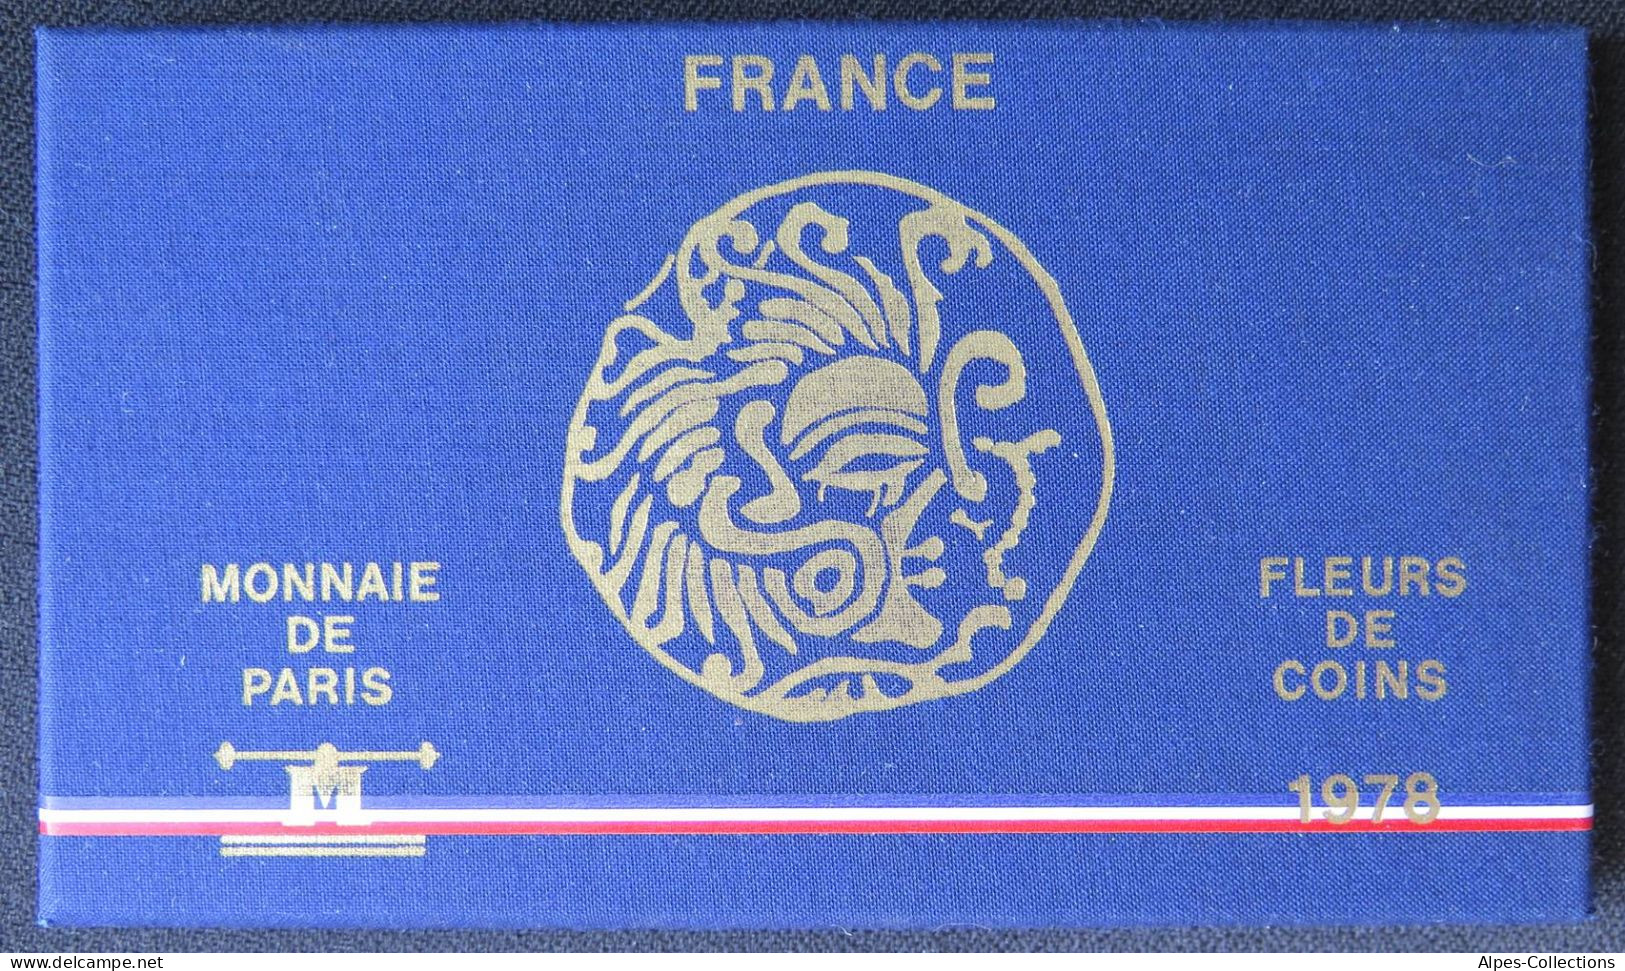 F5000.27 - COFFRET FLEURS DE COINS - 1978 - 1 Centime REBORD à 50 Francs - Tr B - BU, Proofs & Presentation Cases